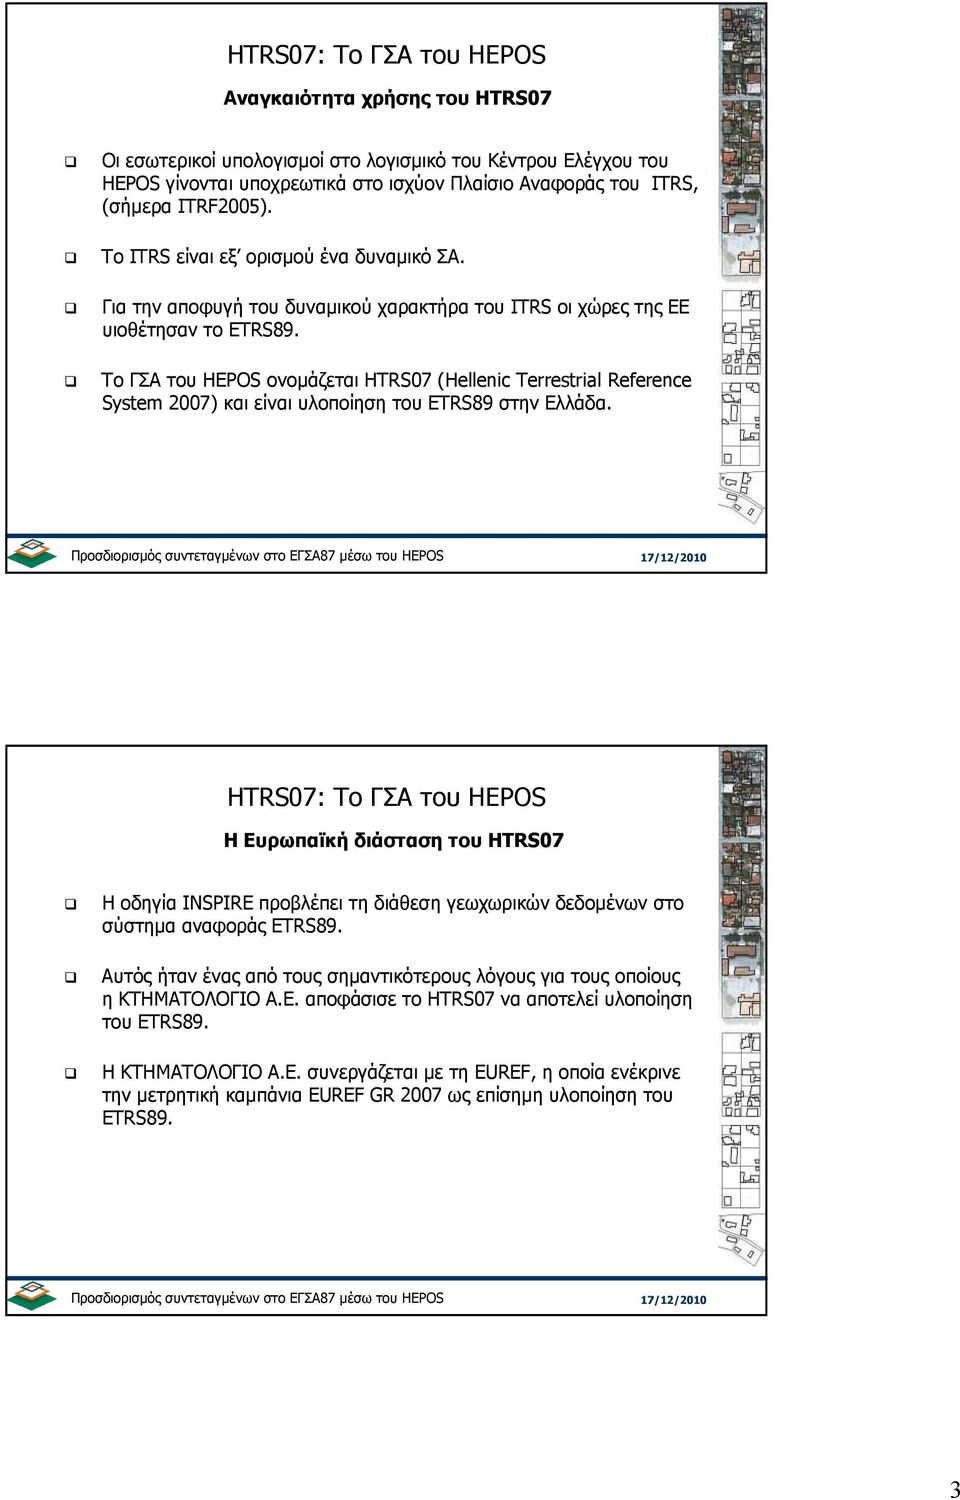 Το ΓΣΑ του HEPOS ονοµάζεται HTRS07 (Hellenic Terrestrial Reference System 2007) και είναι υλοποίηση του ETRS89 στην Ελλάδα.